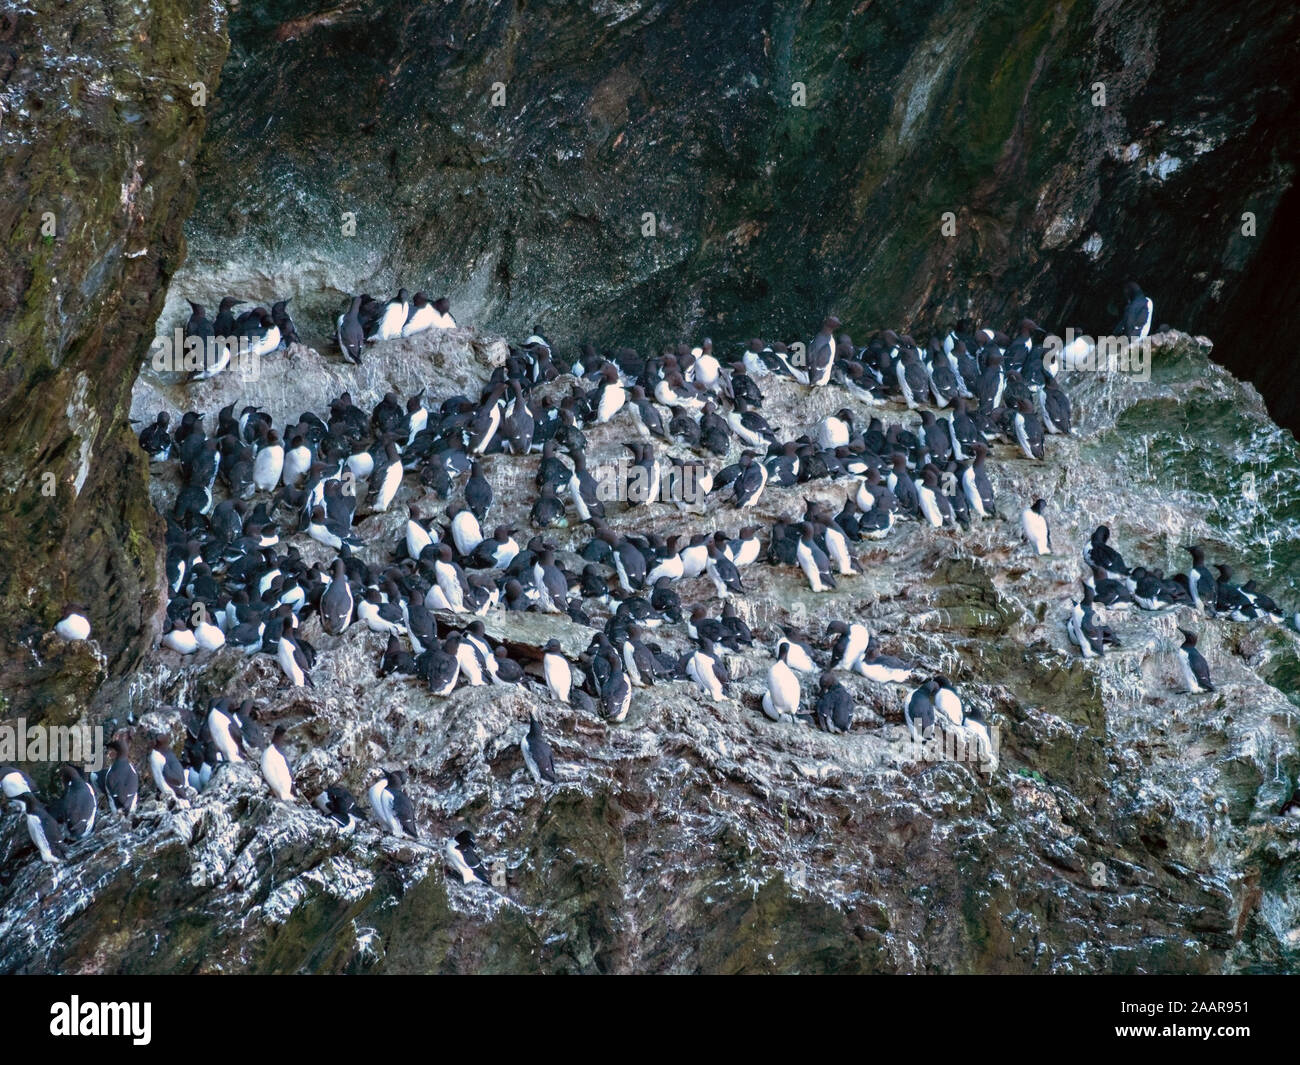 Les Guillemots communs ( Uria aalge ) colonie d'oiseaux de paradis du porc, à l'île de Colonsay, Ecosse, Royaume-Uni Banque D'Images